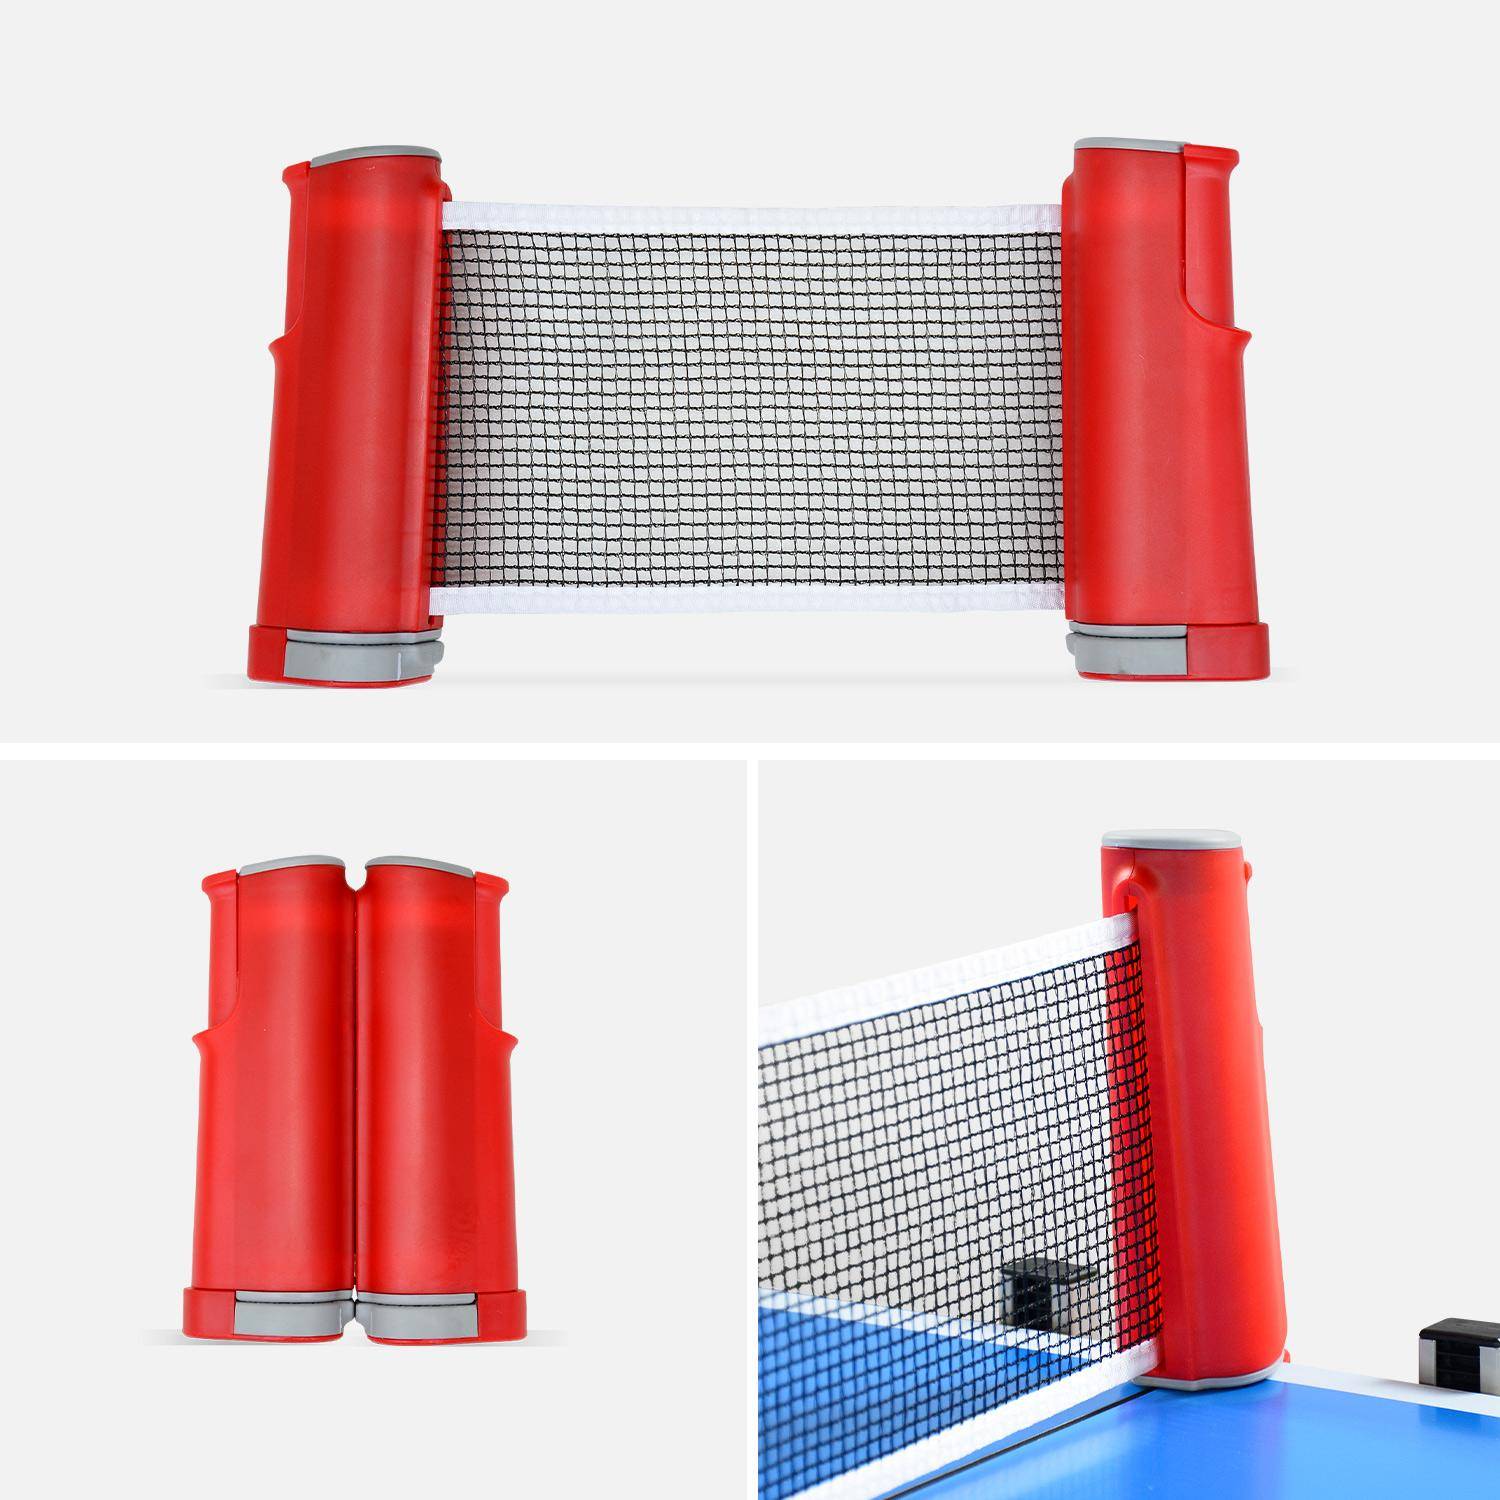 Table de ping pong OUTDOOR bleue - table pliable avec 2 raquettes et 3 balles, pour utilisation extérieure, sport tennis de table Photo4